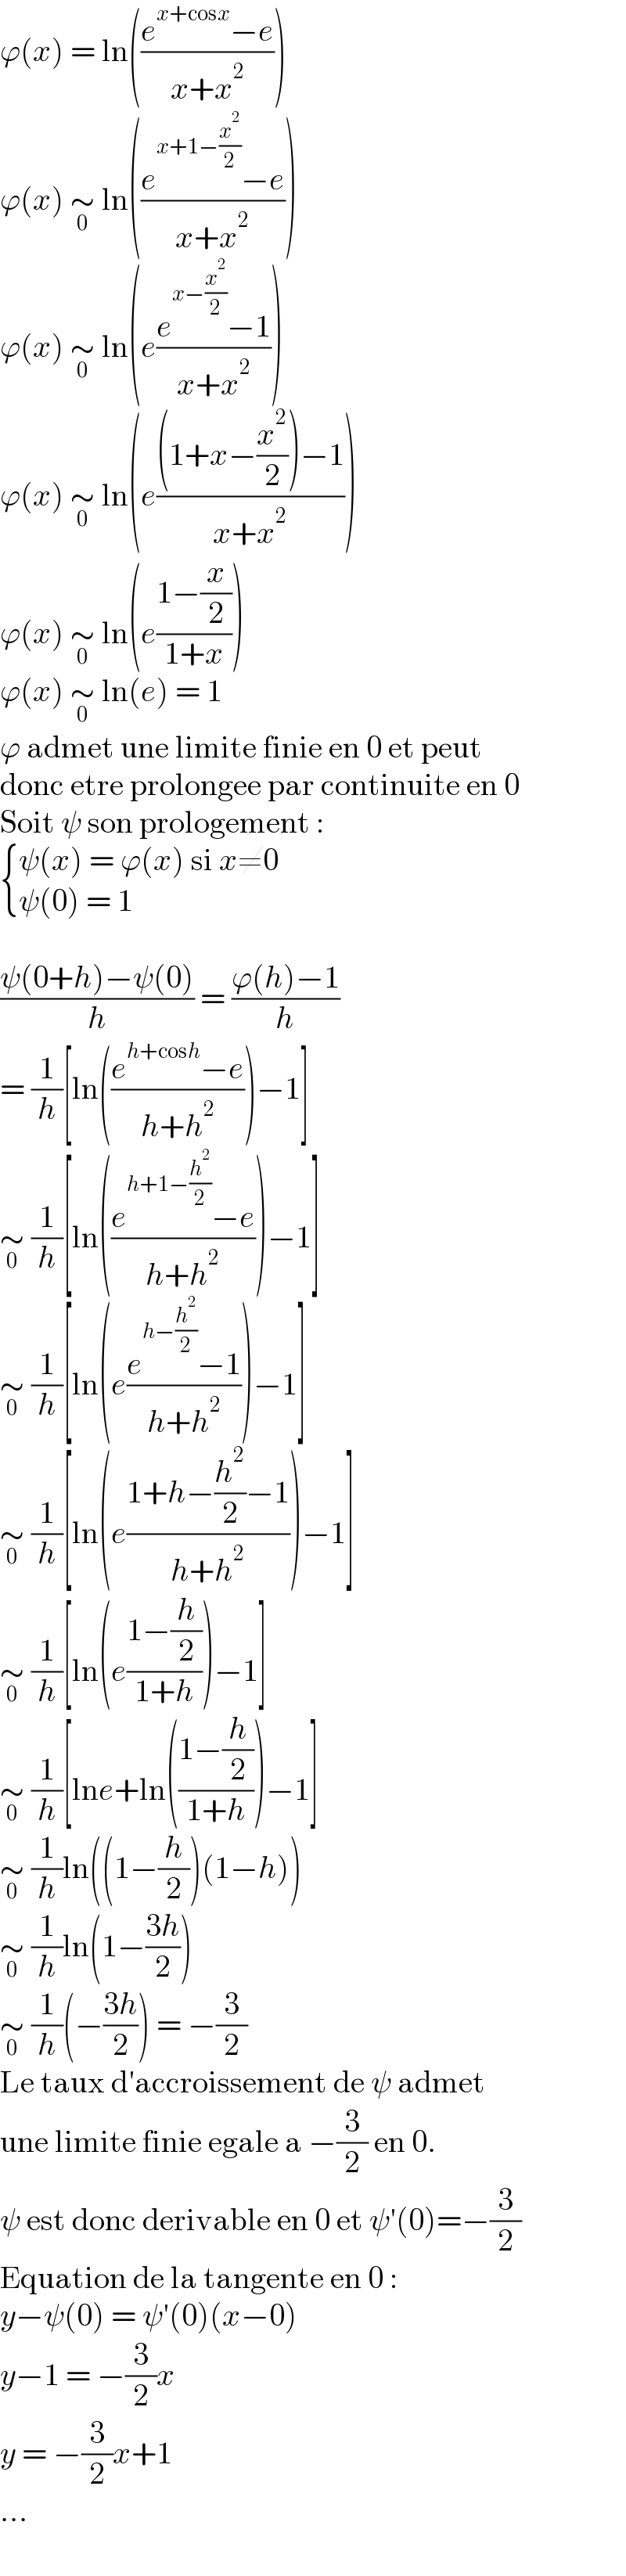 ϕ(x) = ln(((e^(x+cosx) −e)/(x+x^2 )))  ϕ(x) ∼_0  ln(((e^(x+1−(x^2 /2)) −e)/(x+x^2 )))  ϕ(x) ∼_0  ln(e((e^(x−(x^2 /2)) −1)/(x+x^2 )))  ϕ(x) ∼_0  ln(e(((1+x−(x^2 /2))−1)/(x+x^2 )))  ϕ(x) ∼_0  ln(e((1−(x/2))/(1+x)))  ϕ(x) ∼_0  ln(e) = 1  ϕ admet une limite finie en 0 et peut  donc etre prolongee par continuite en 0  Soit ψ son prologement :   { ((ψ(x) = ϕ(x) si x≠0)),((ψ(0) = 1)) :}    ((ψ(0+h)−ψ(0))/h) = ((ϕ(h)−1)/h)  = (1/h)[ln(((e^(h+cosh) −e)/(h+h^2 )))−1]  ∼_0  (1/h)[ln(((e^(h+1−(h^2 /2)) −e)/(h+h^2 )))−1]  ∼_0  (1/h)[ln(e((e^(h−(h^2 /2)) −1)/(h+h^2 )))−1]  ∼_0  (1/h)[ln(e((1+h−(h^2 /2)−1)/(h+h^2 )))−1]  ∼_0  (1/h)[ln(e((1−(h/2))/(1+h)))−1]  ∼_0  (1/h)[lne+ln(((1−(h/2))/(1+h)))−1]  ∼_0  (1/h)ln((1−(h/2))(1−h))  ∼_0  (1/h)ln(1−((3h)/2))  ∼_0  (1/h)(−((3h)/2)) = −(3/2)  Le taux d′accroissement de ψ admet  une limite finie egale a −(3/2) en 0.  ψ est donc derivable en 0 et ψ′(0)=−(3/2)  Equation de la tangente en 0 :  y−ψ(0) = ψ′(0)(x−0)  y−1 = −(3/2)x  y = −(3/2)x+1  ...  